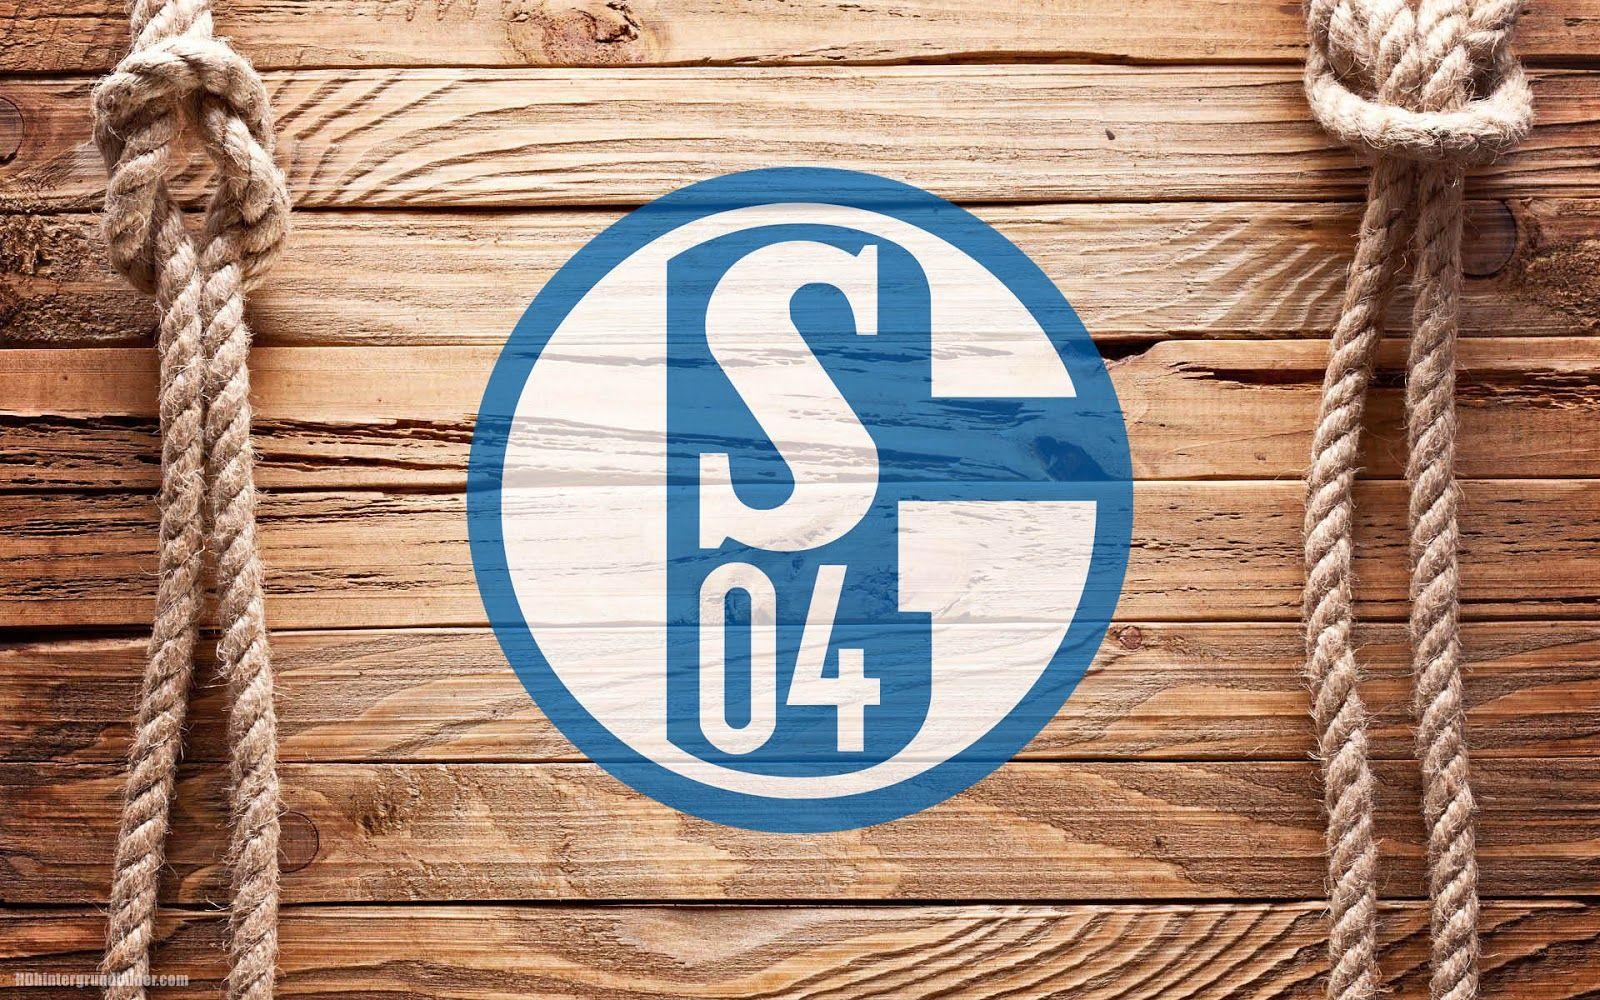 Most Beautiful Schalke 04 Wallpaper. Full HD Picture